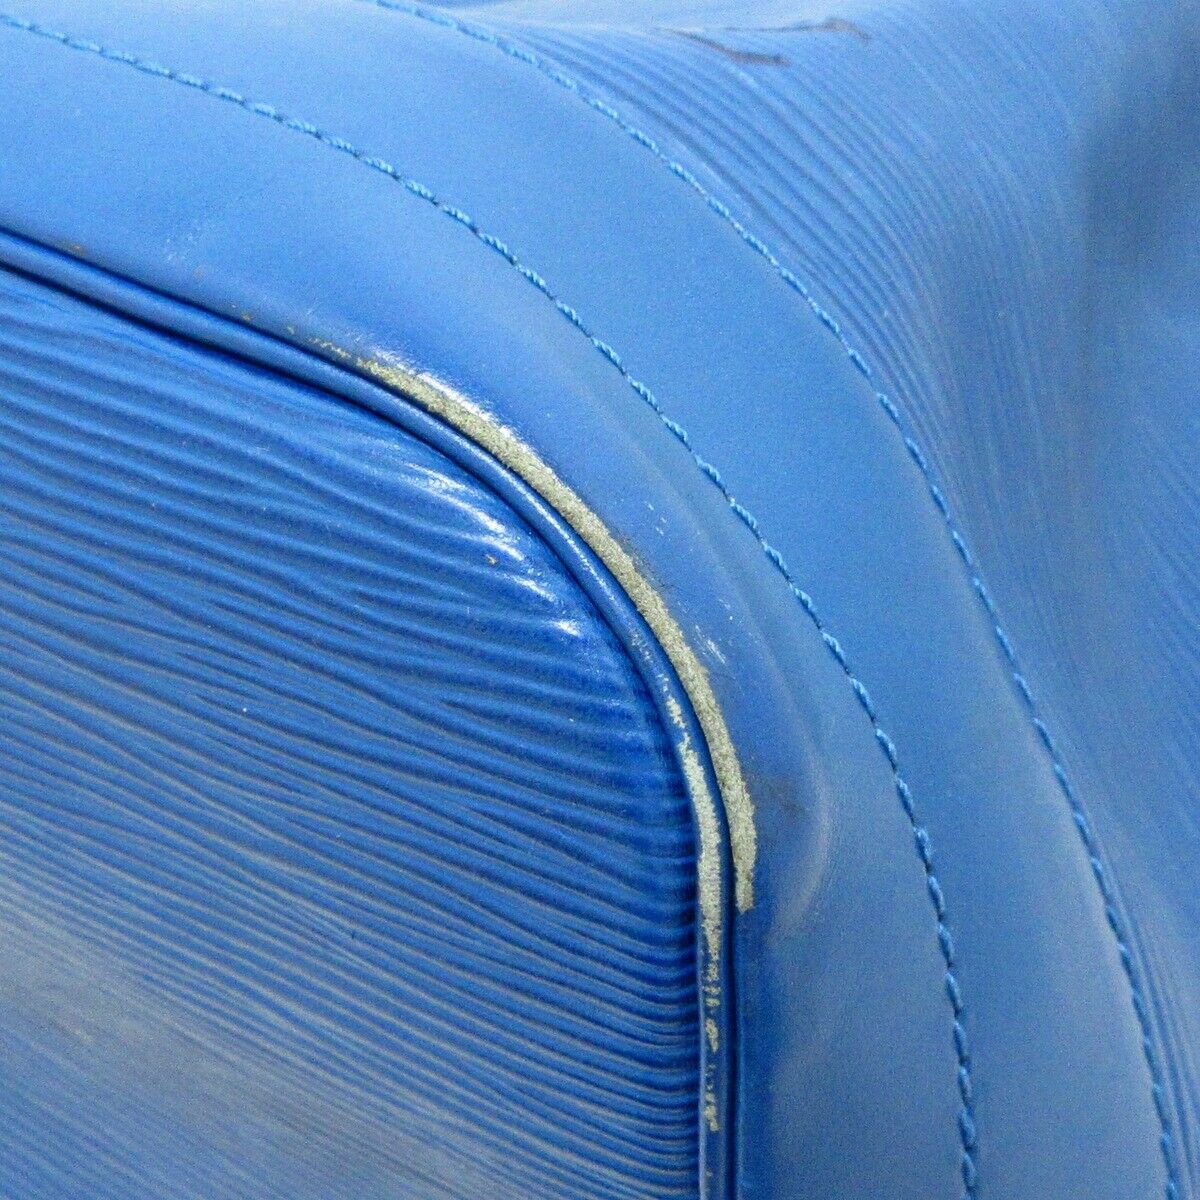 LV NéoNoé BB bucket bag Blue/Beige/Pink  Shoulder bag, Louis vuitton bag,  Blue bags